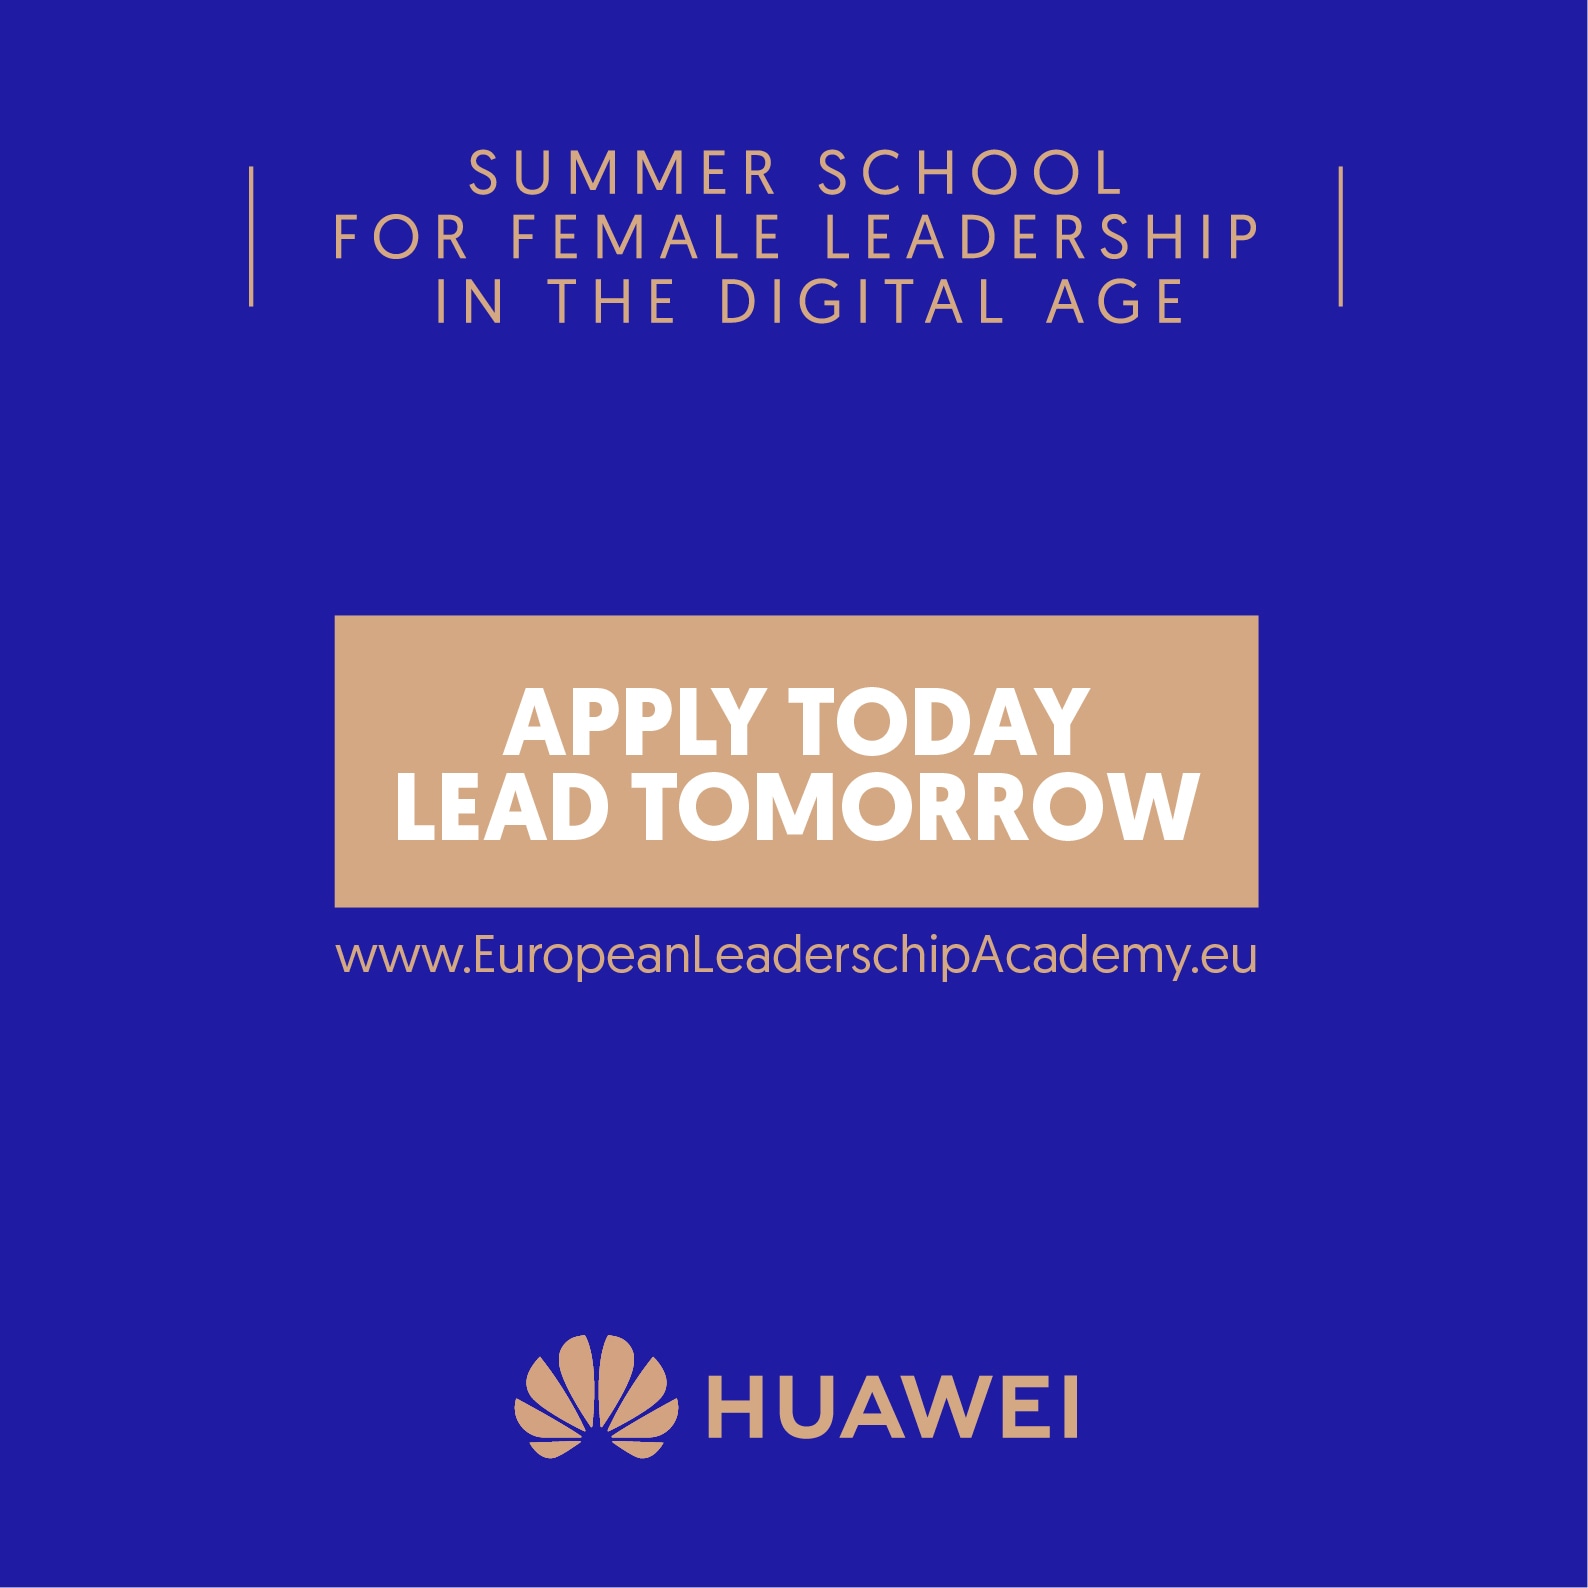 European Leadership Academy Ukraine